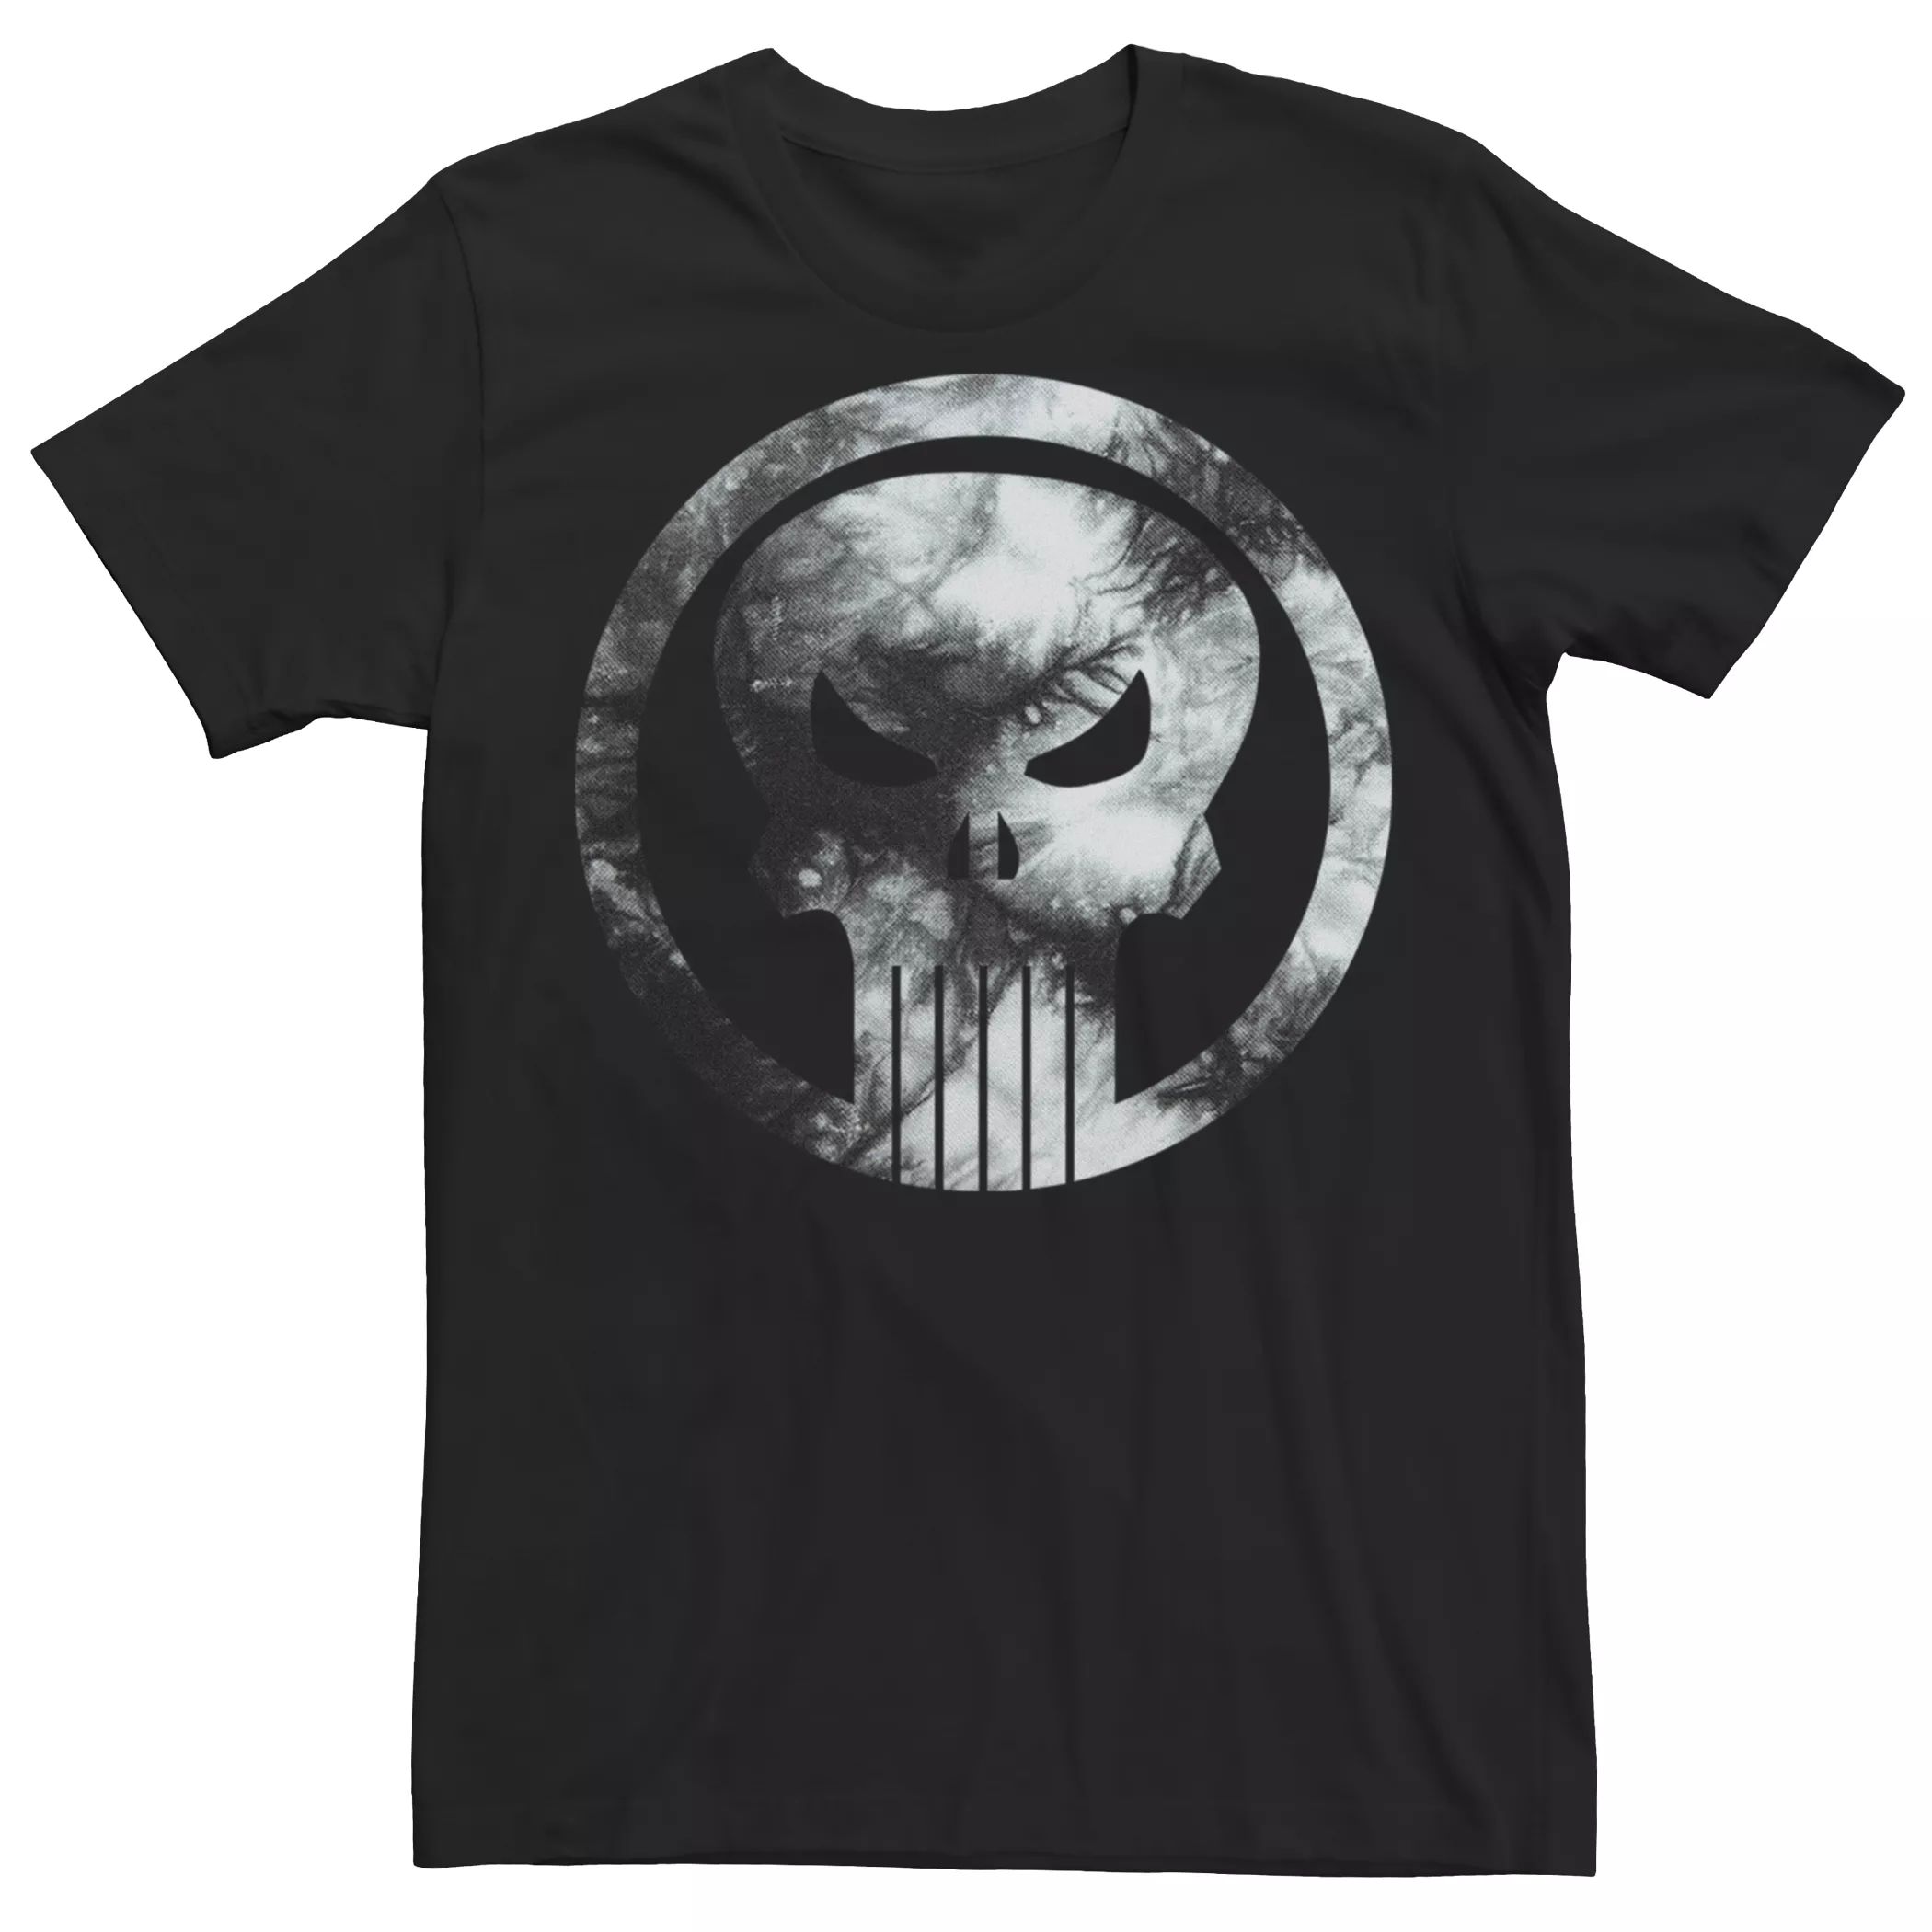 Мужская футболка с логотипом The Punisher Licensed Character цена и фото